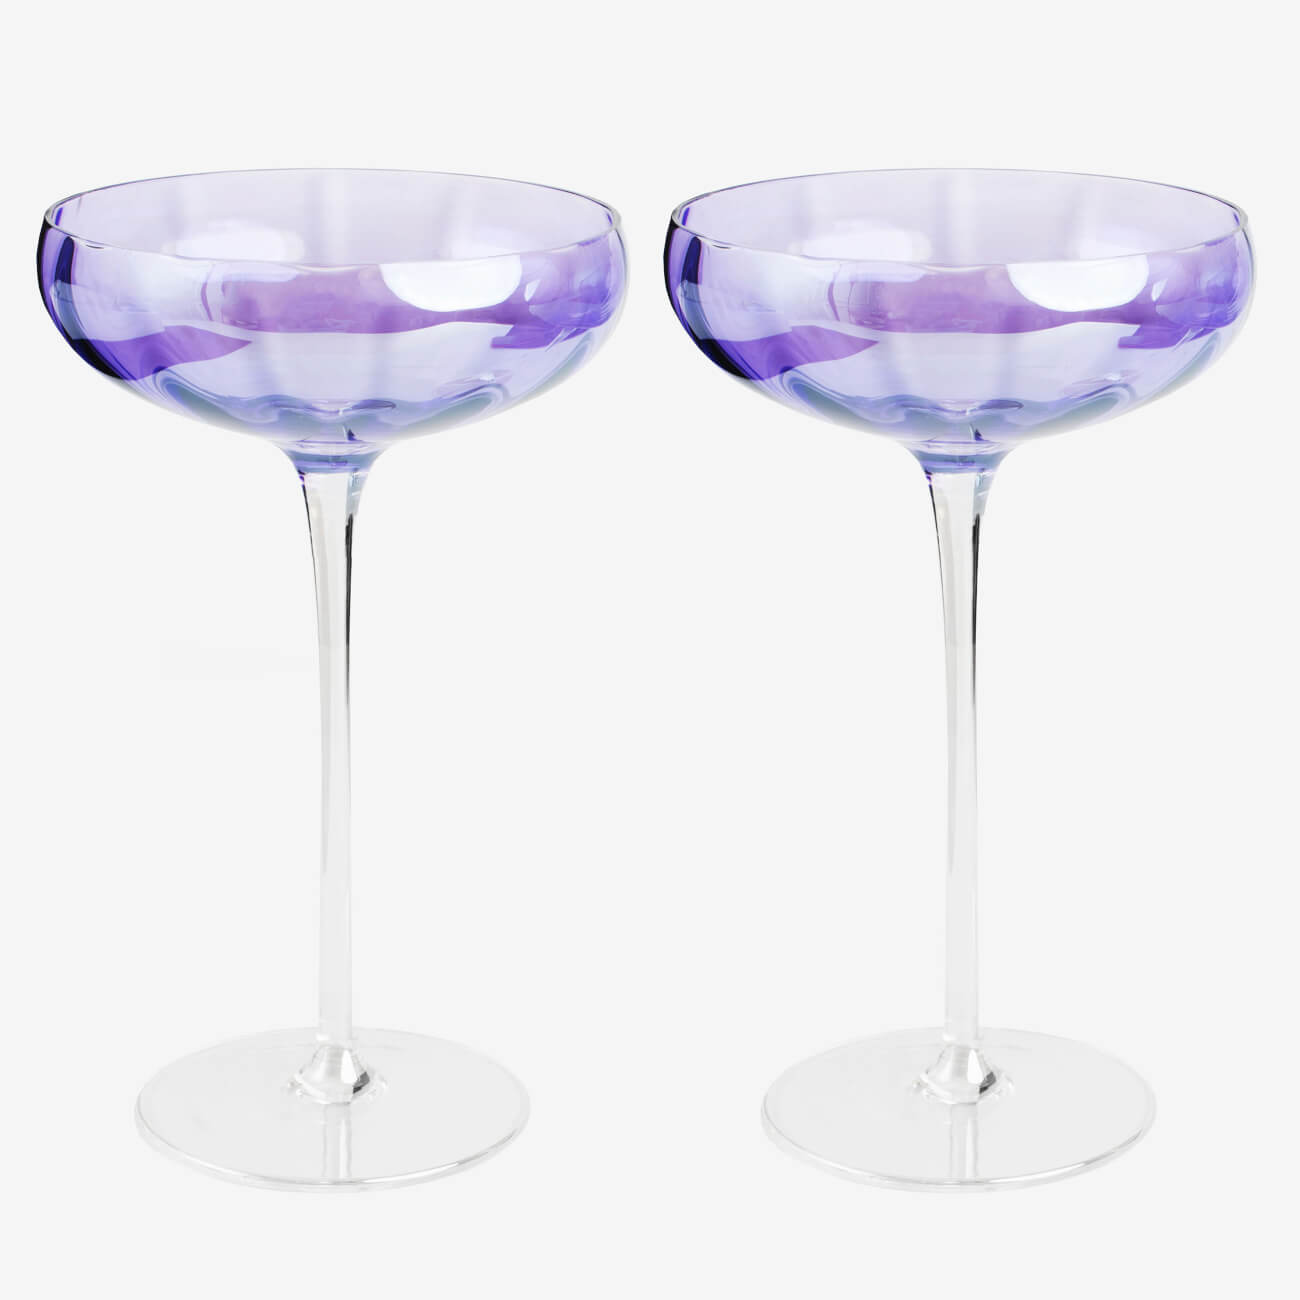 Бокал-креманка для шампанского, 220 мл, 2 шт, стекло, фиолетовый, Filo R color очки для езды на мототехнике стекло фиолетовый хамелеон черные